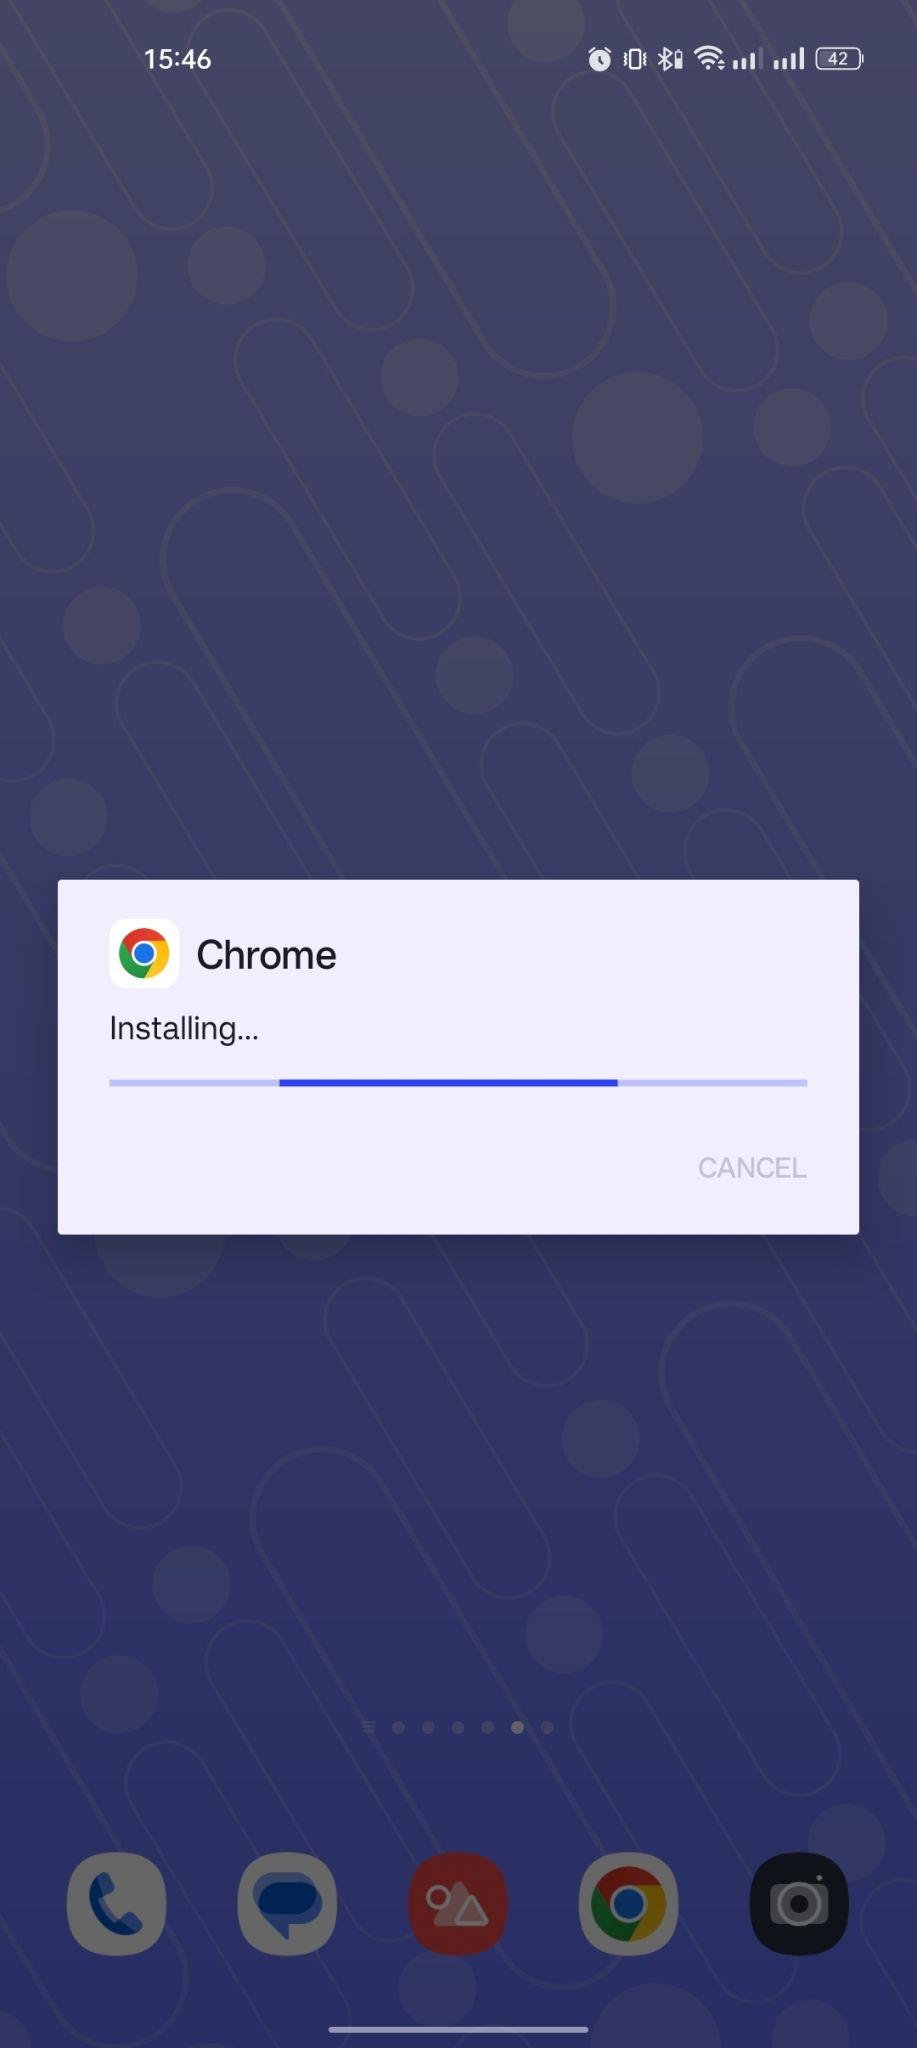 Chrome apk installing